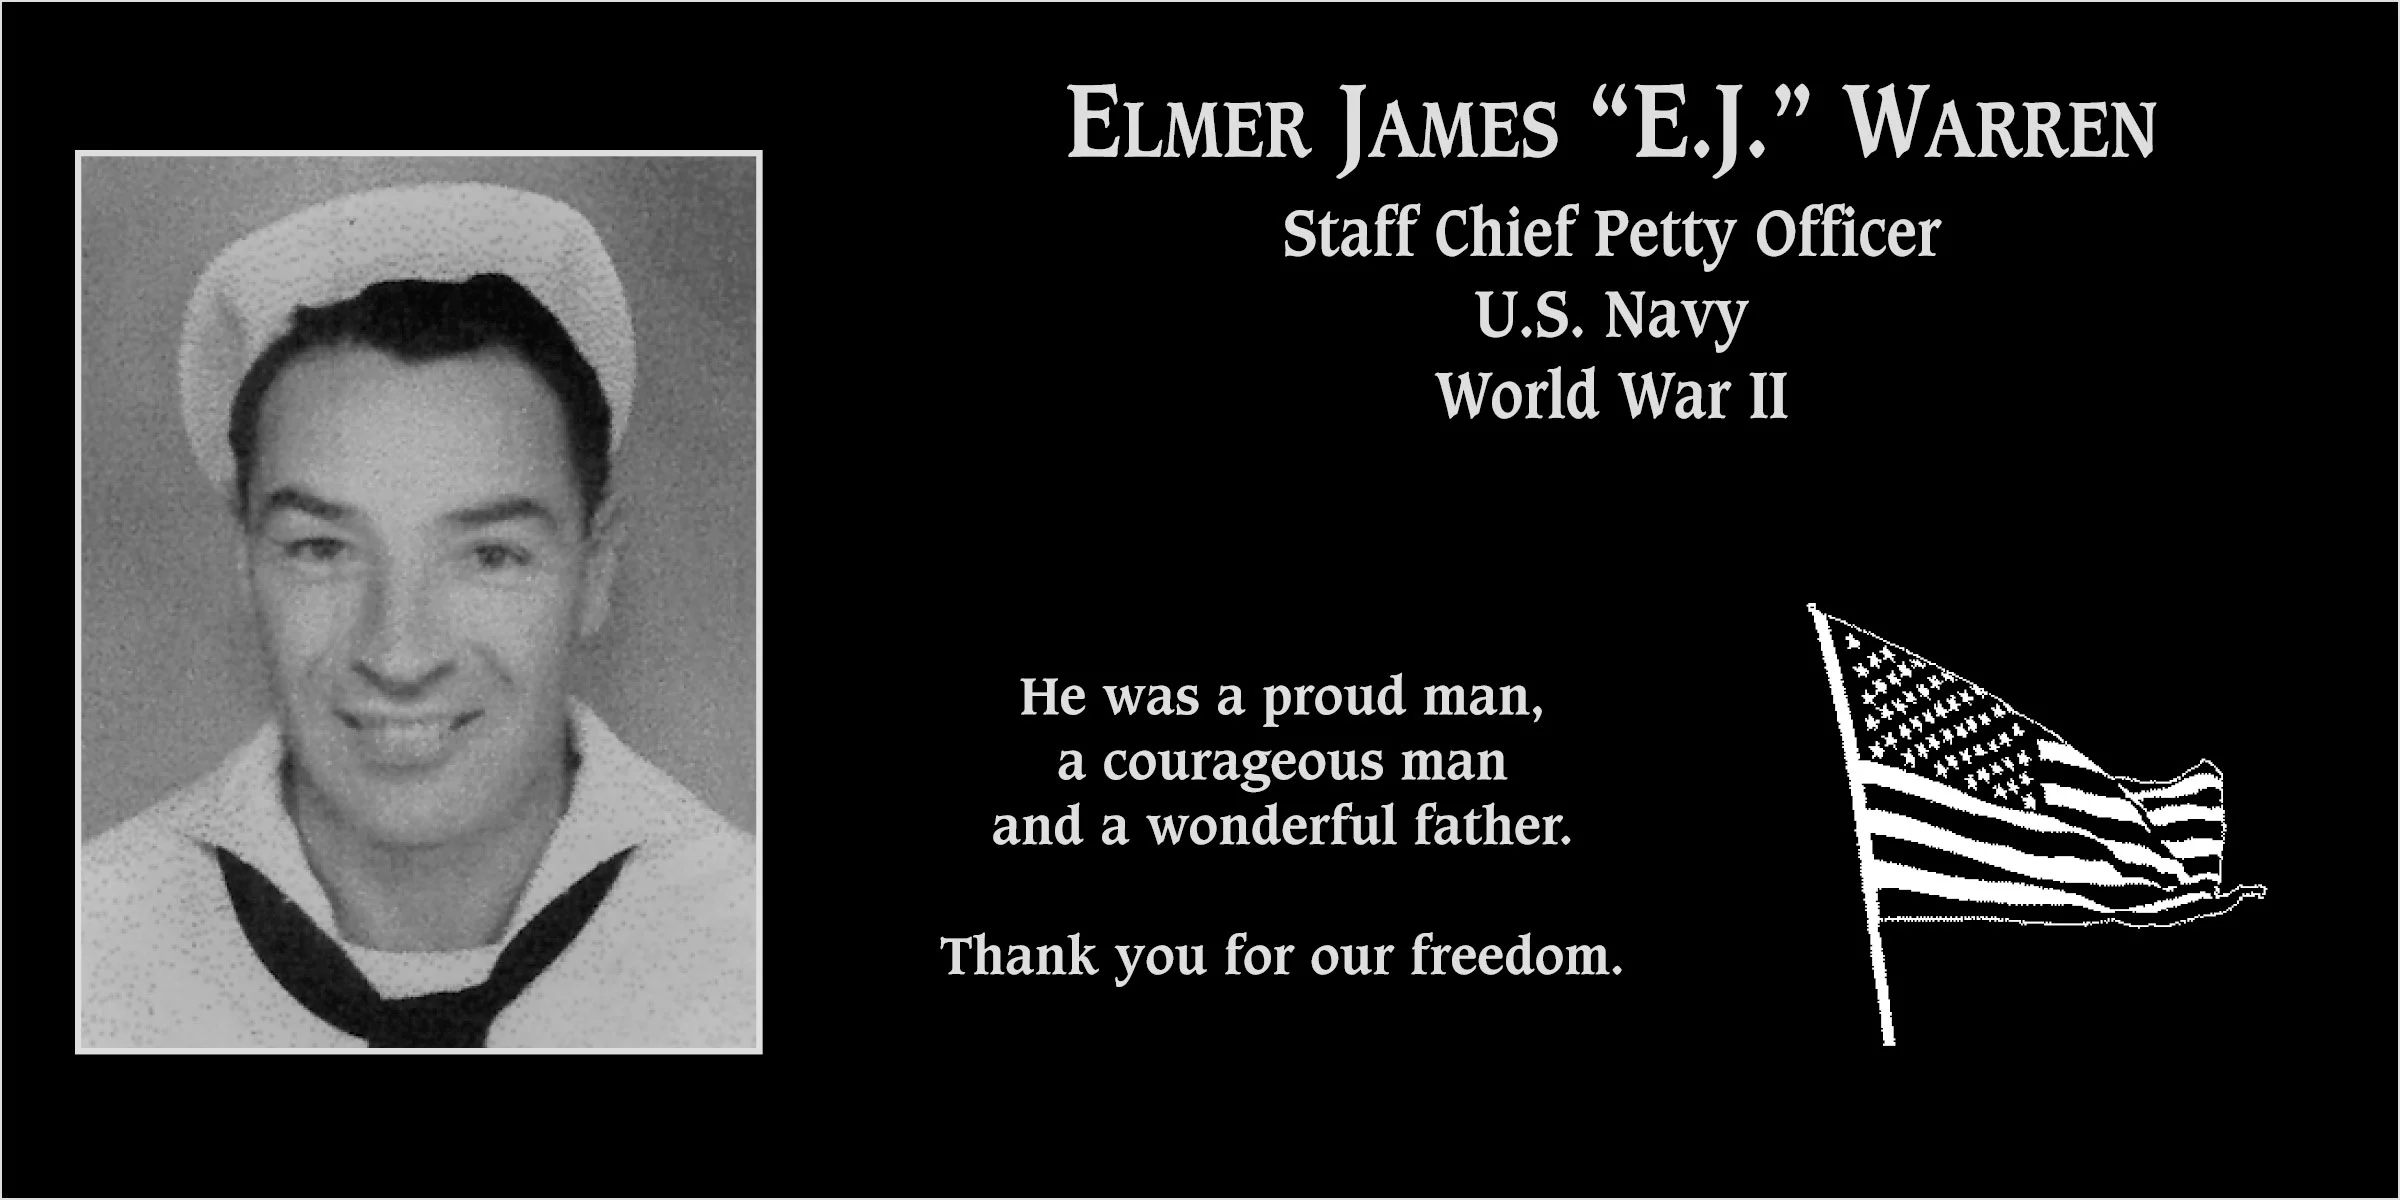 Elmer James “E.J.” Warren